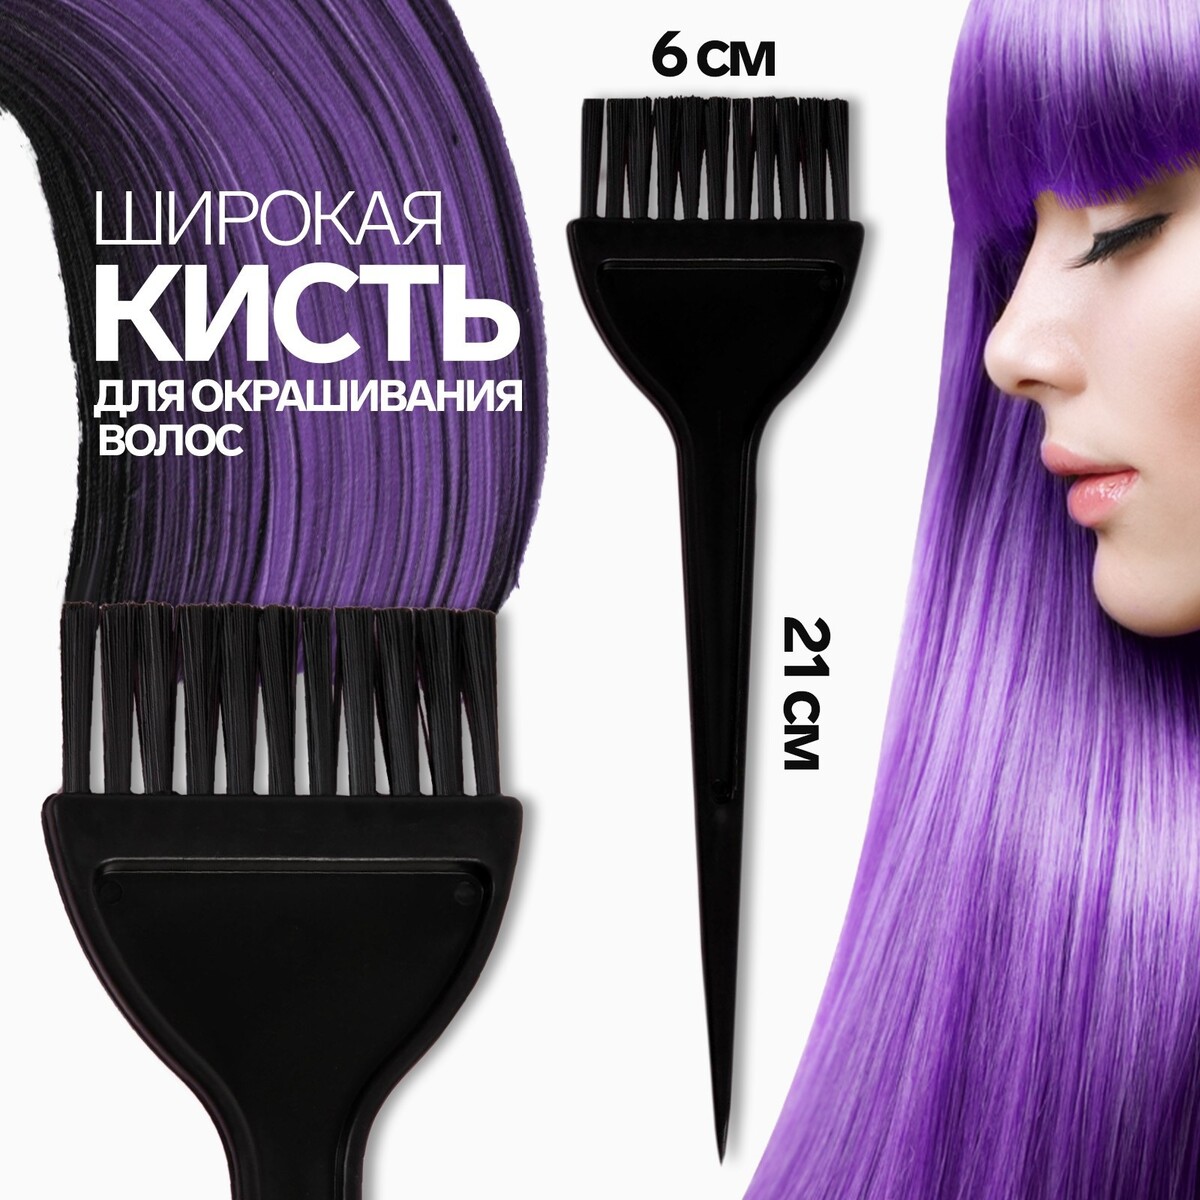 Кисть для окрашивания волос, широкая, 21 х 6 см, цвет черный кисть для окрашивания волос широкая 21 х 6 см